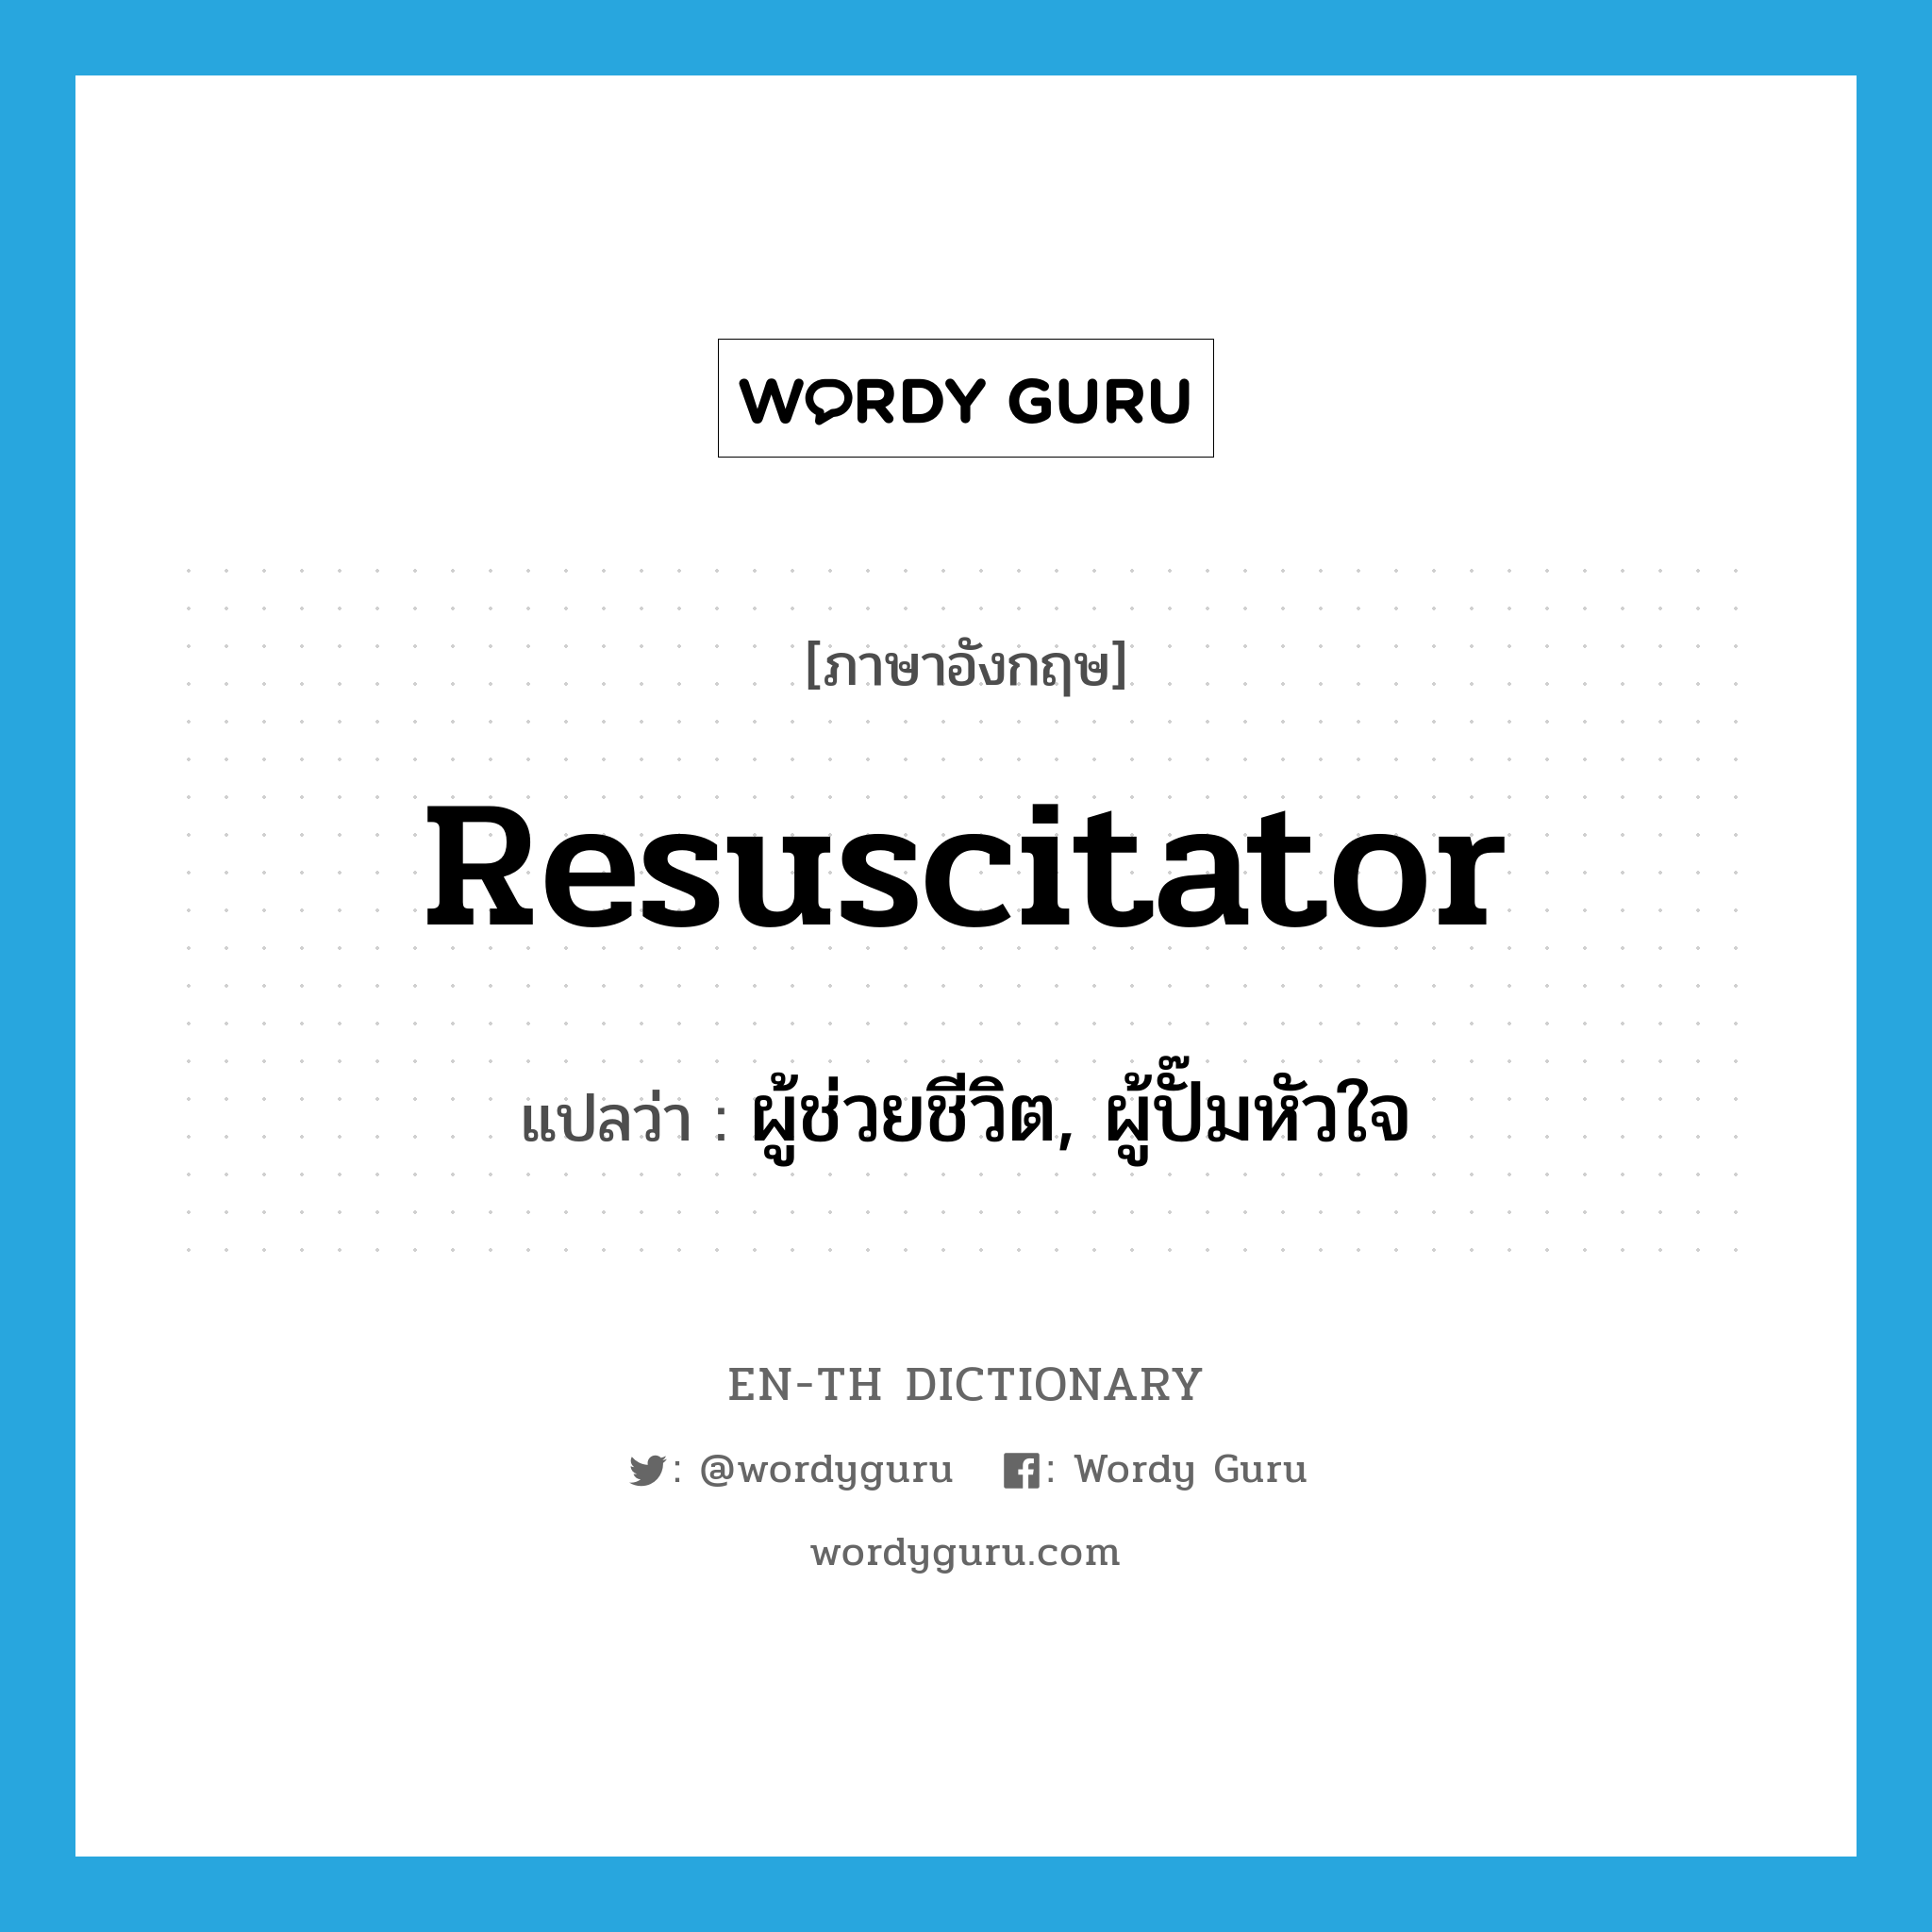 ผู้ช่วยชีวิต, ผู้ปั๊มหัวใจ ภาษาอังกฤษ?, คำศัพท์ภาษาอังกฤษ ผู้ช่วยชีวิต, ผู้ปั๊มหัวใจ แปลว่า resuscitator ประเภท N หมวด N